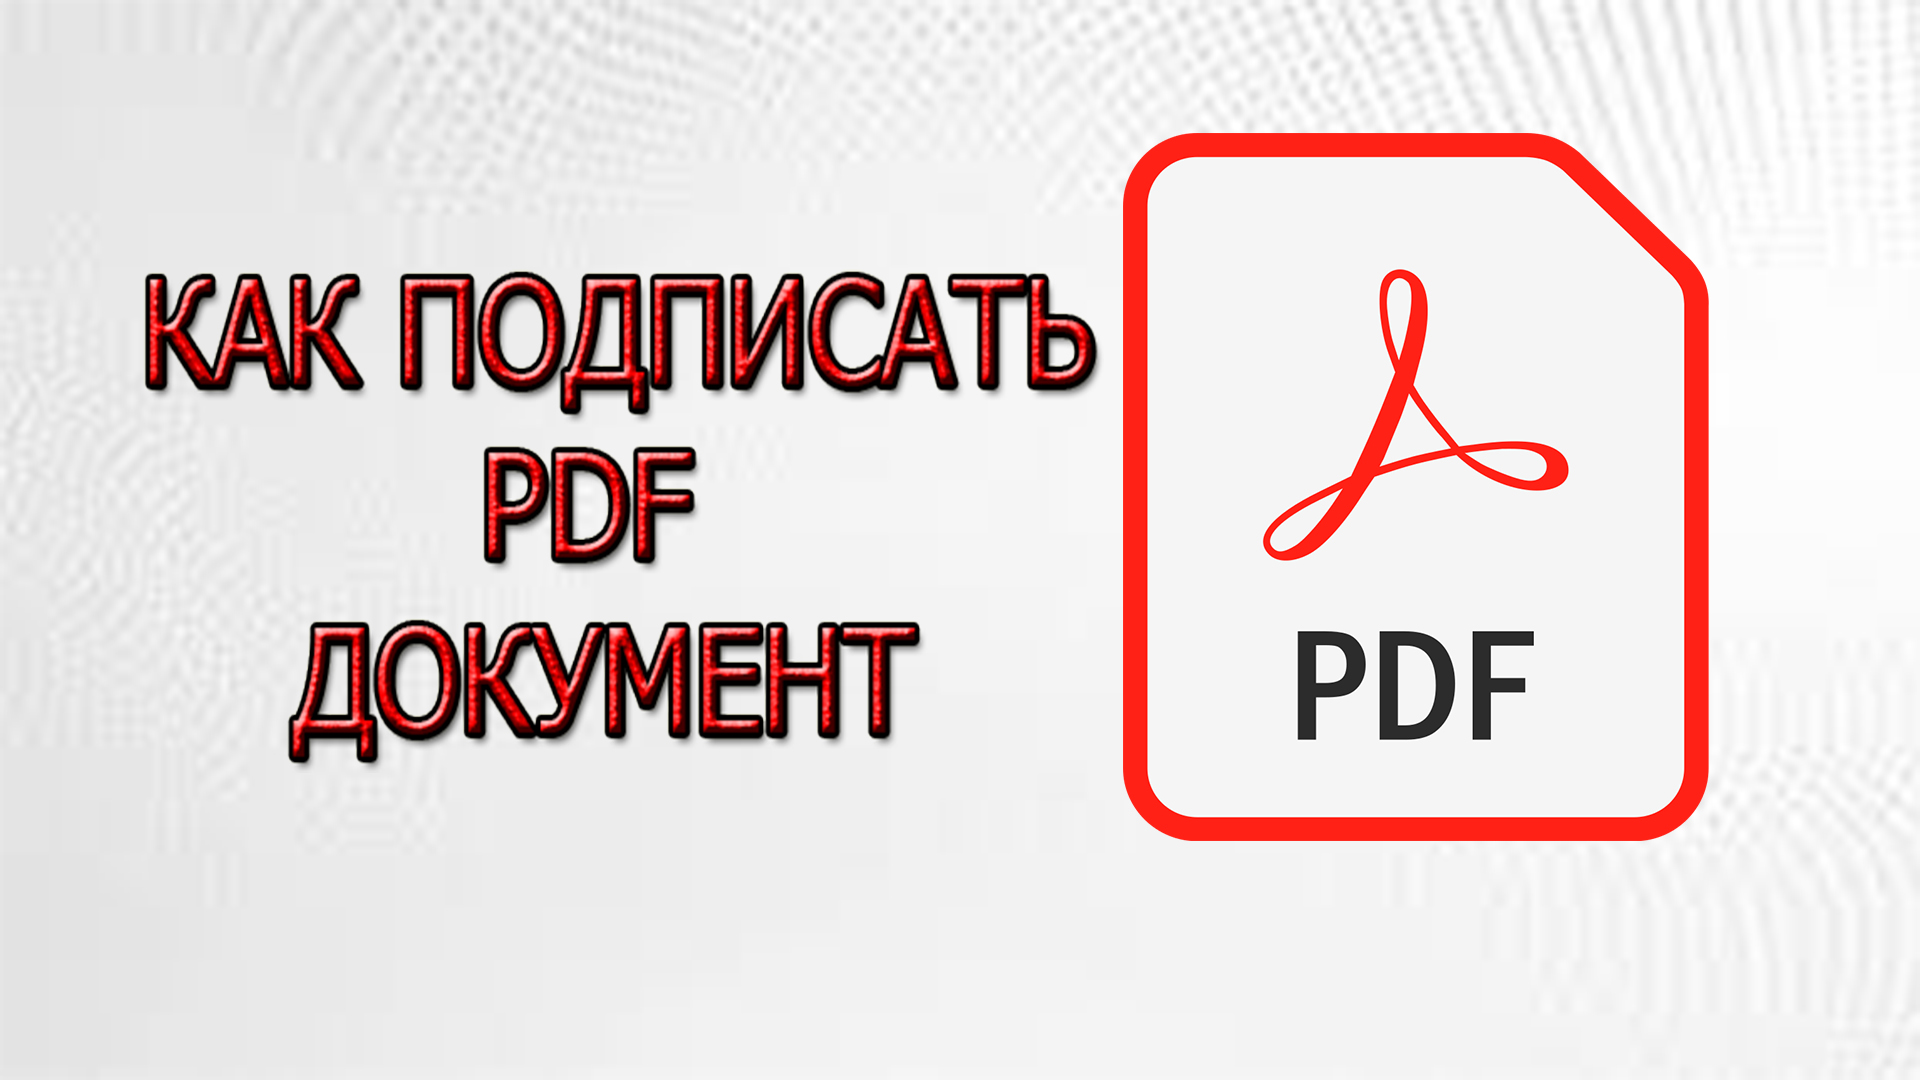 Как подписать PDF документ